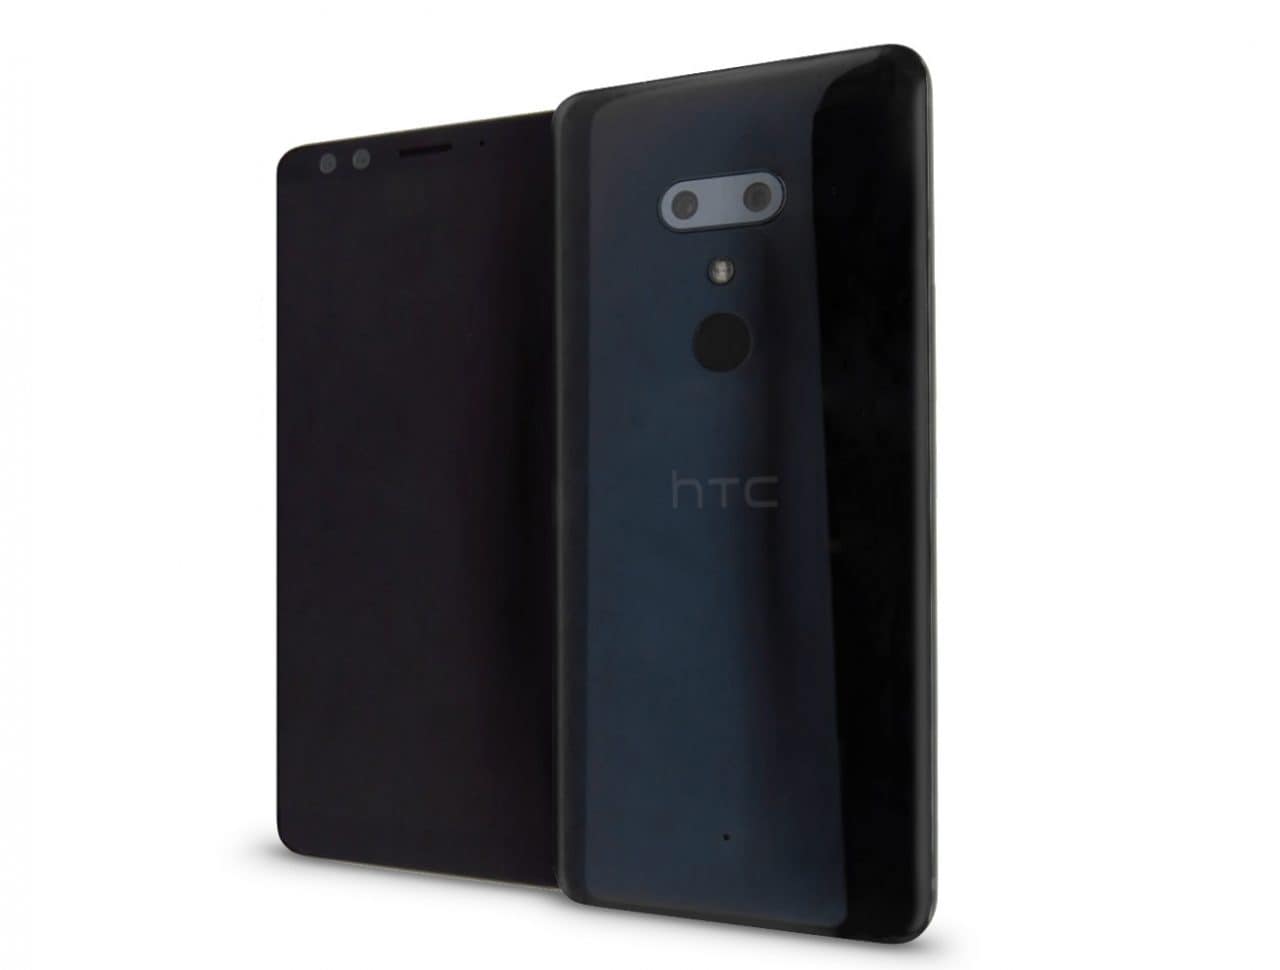 Nuove conferme sul look di HTC U12+: ecco le pellicole per la protezione dello schermo (foto)